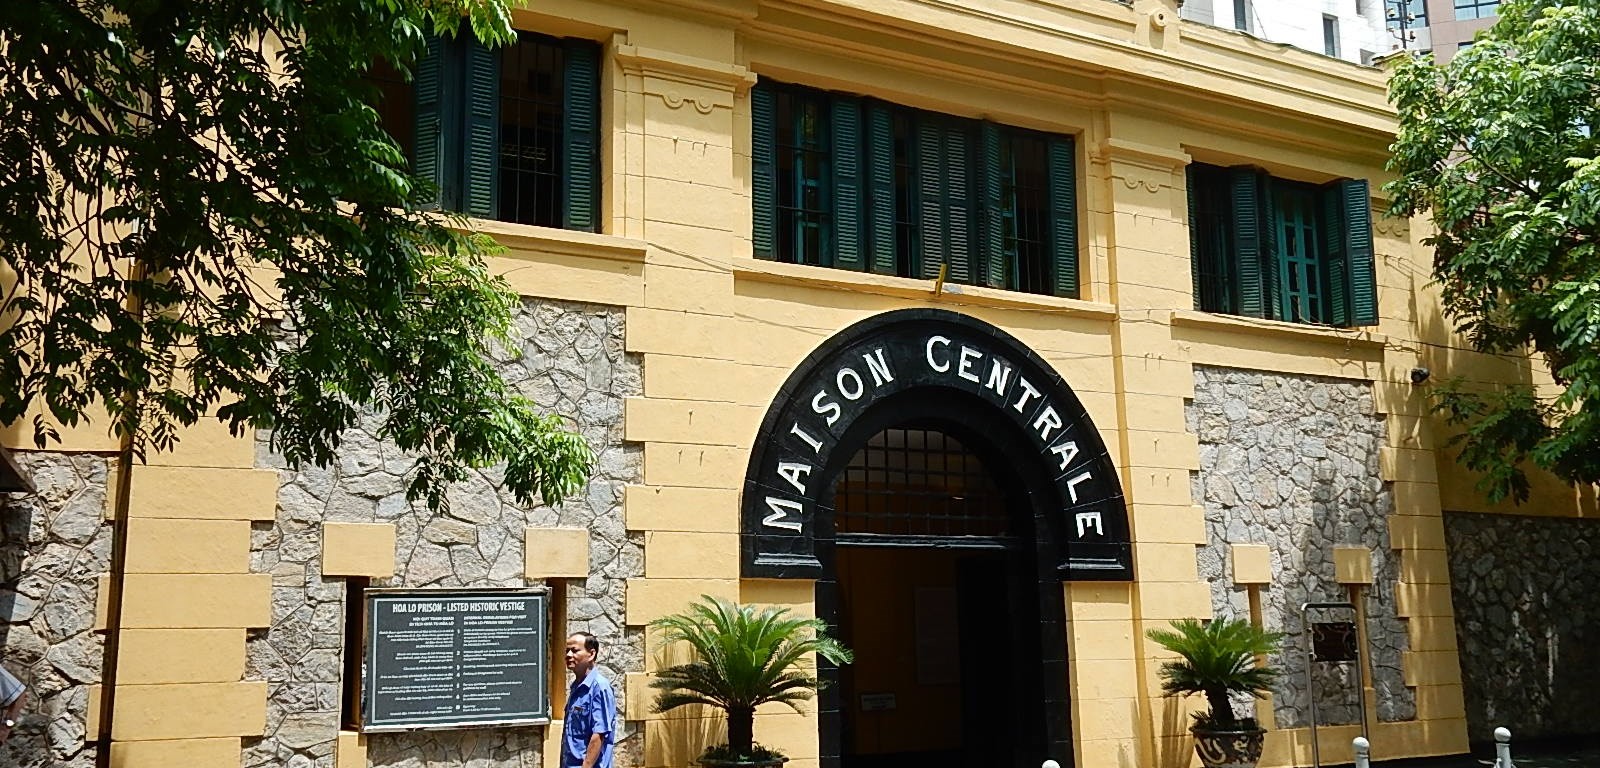 La prison de Hoa Lo à Hanoi, aujourd'hui transformée en musée (CC by Michael Coghlan).